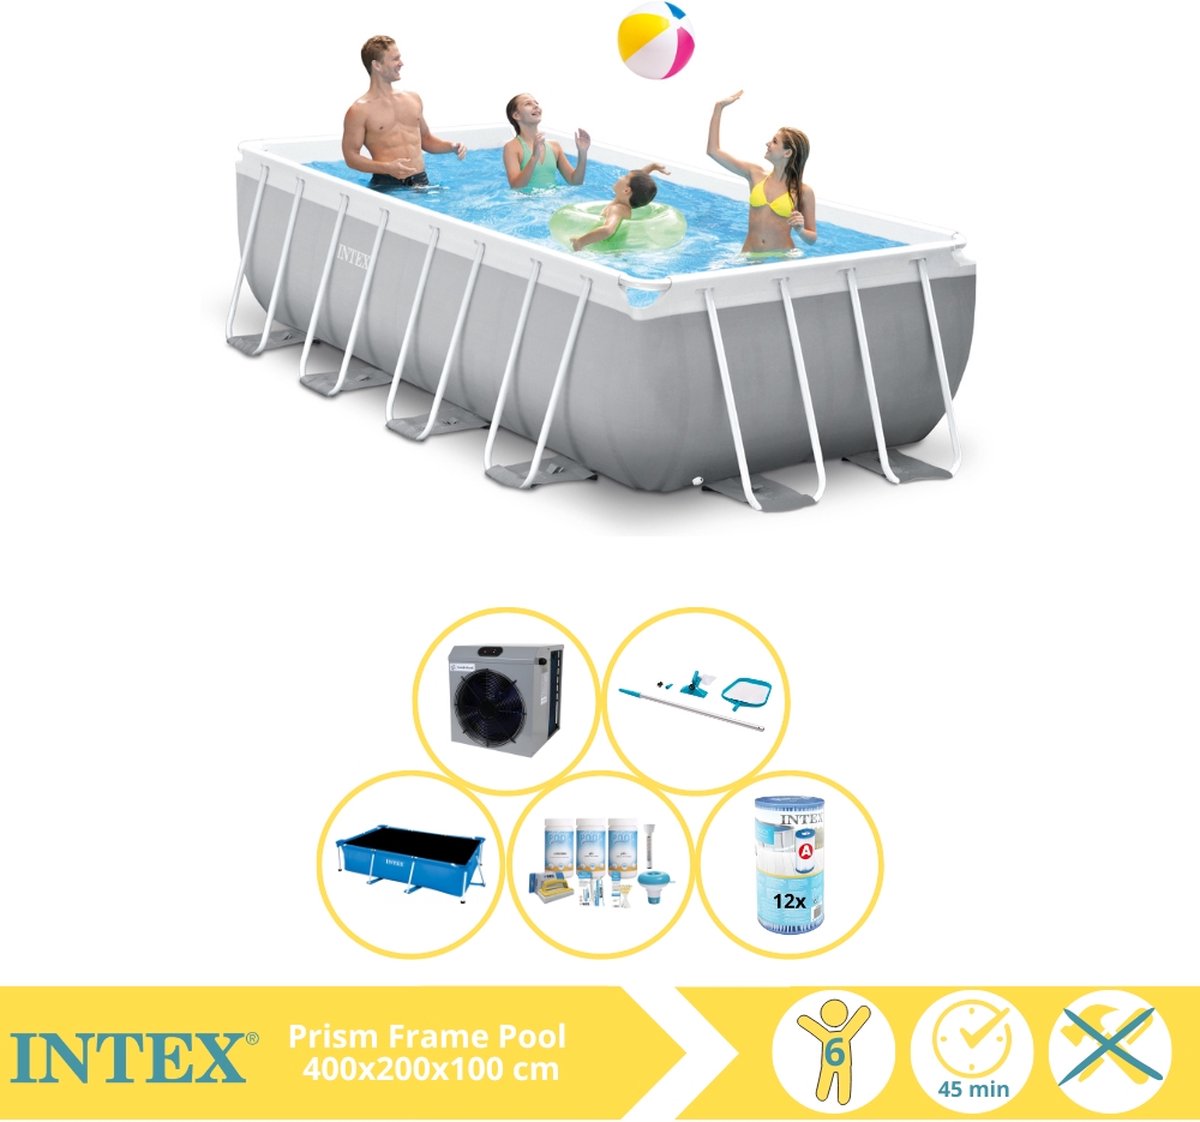 Intex Prism Frame Zwembad - Opzetzwembad - 400x200x100 cm - Inclusief Solarzeil, Onderhoudspakket, Filter, Onderhoudsset en Warmtepomp CP